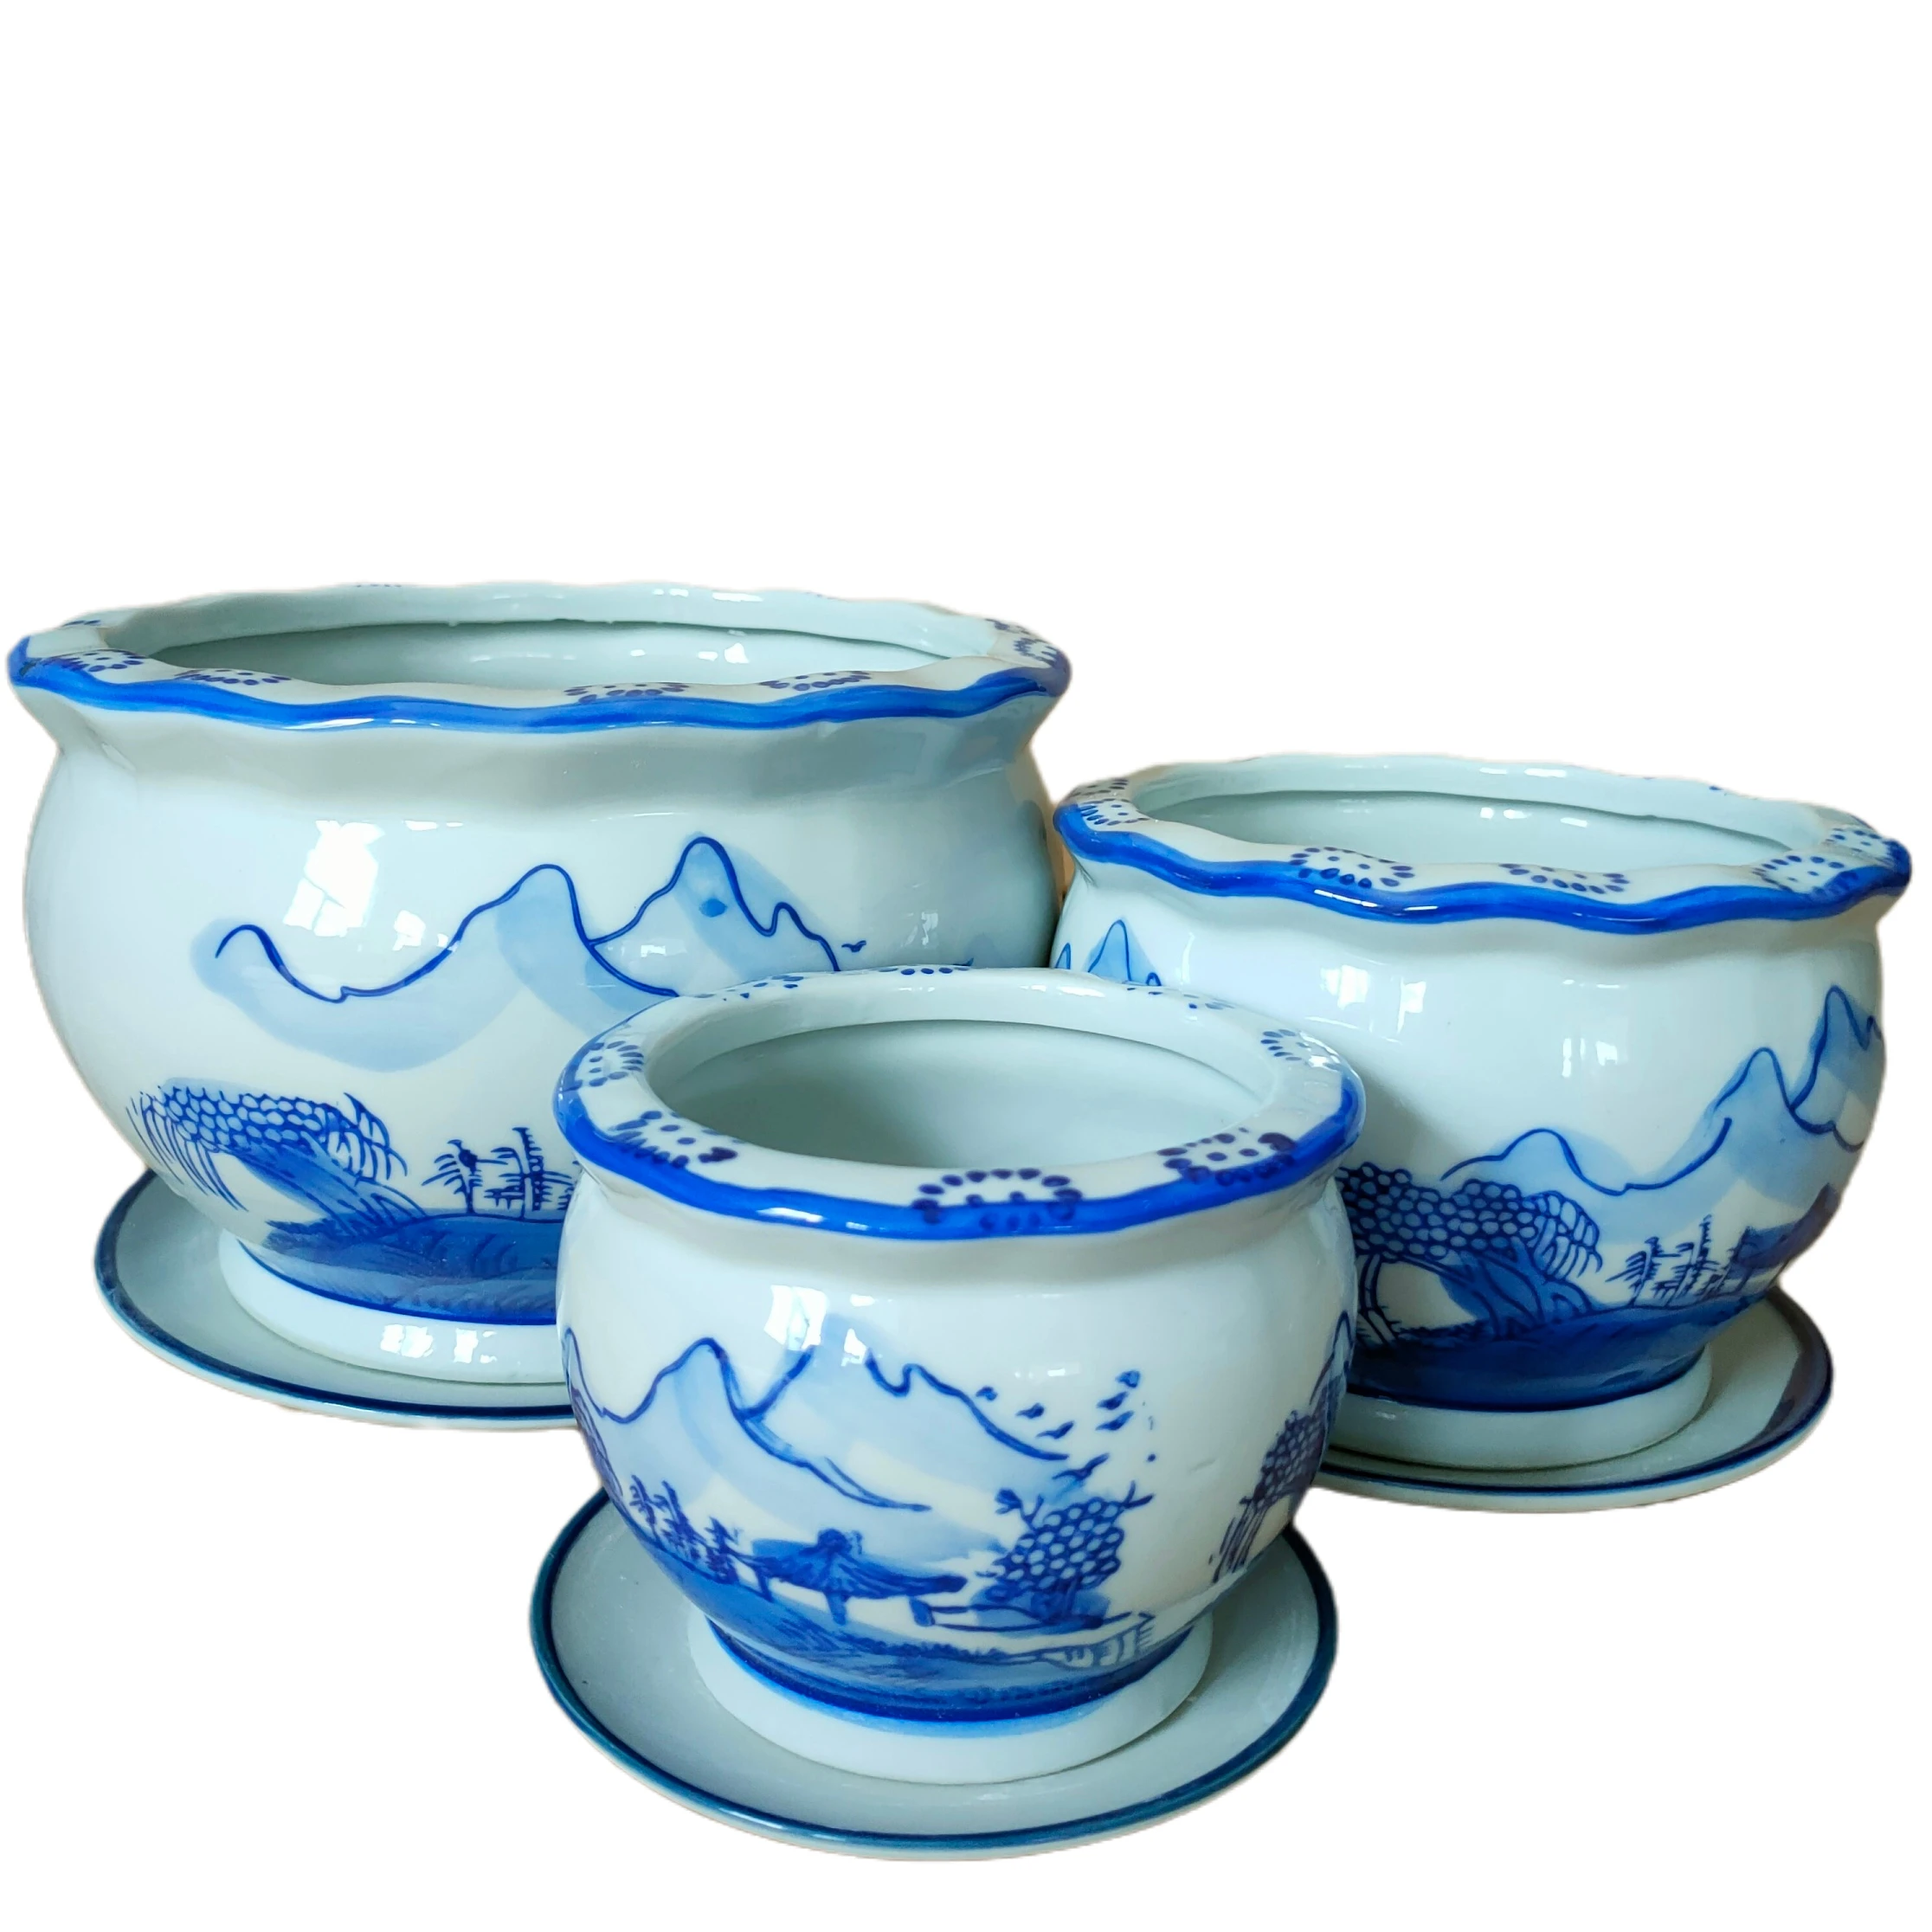 Classical Hand Paint Landscape Design Ceramic Planter Blue and White Porcelain Flower Pot Set of 3